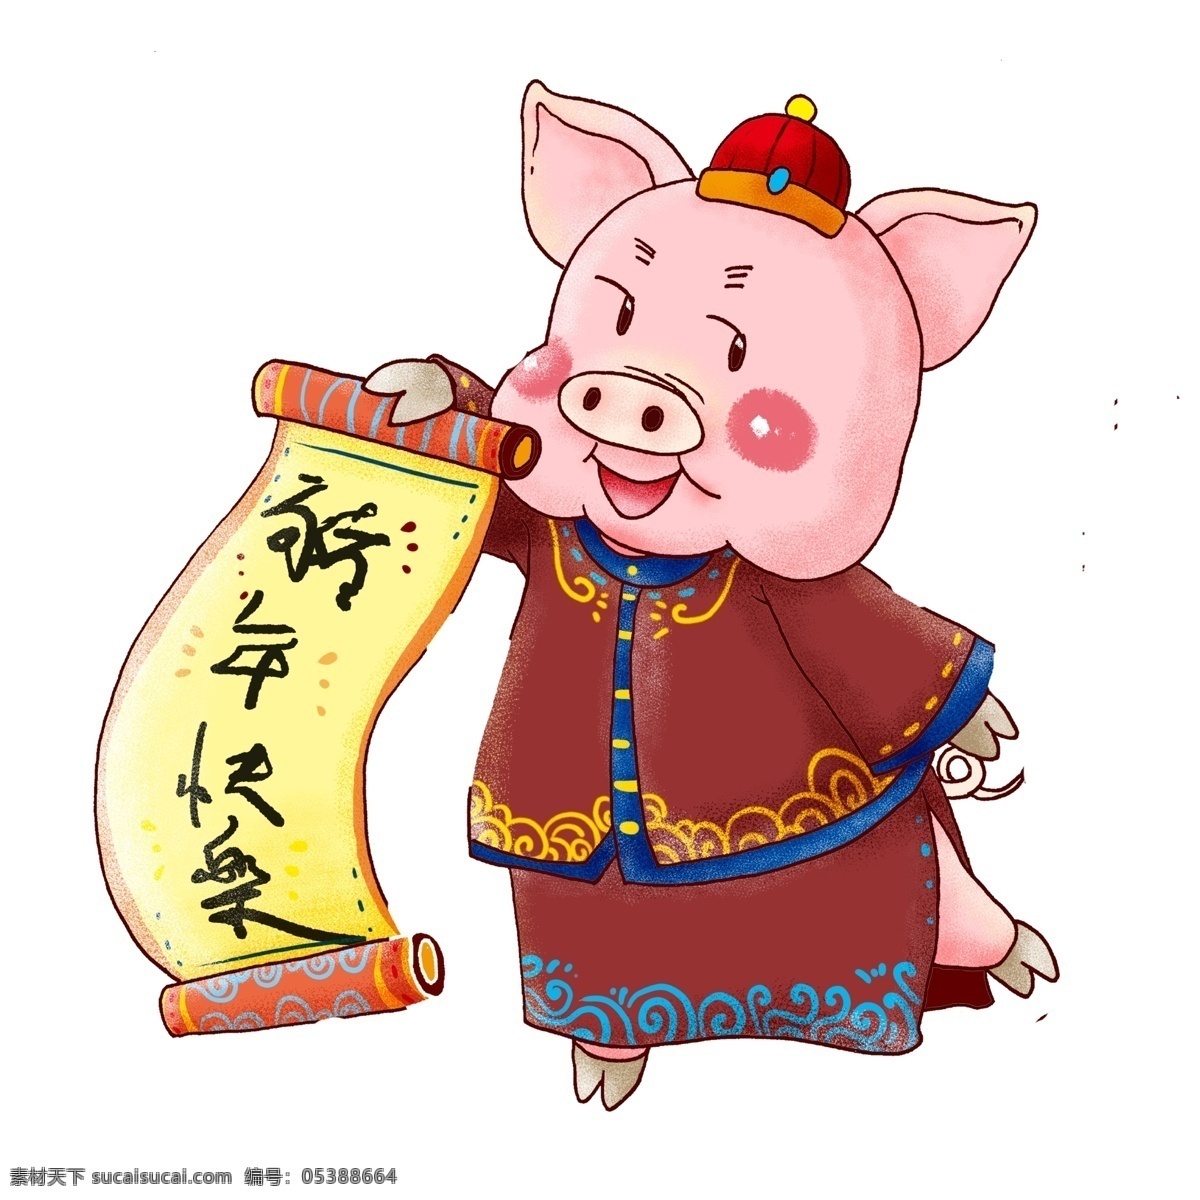 中国 风 春节 穿 唐装 小 猪 卡通 喜庆 中国风 新年快乐 手绘 小猪 猪猪女孩 小猪形象 猪年形象 新年卷轴 春节元素